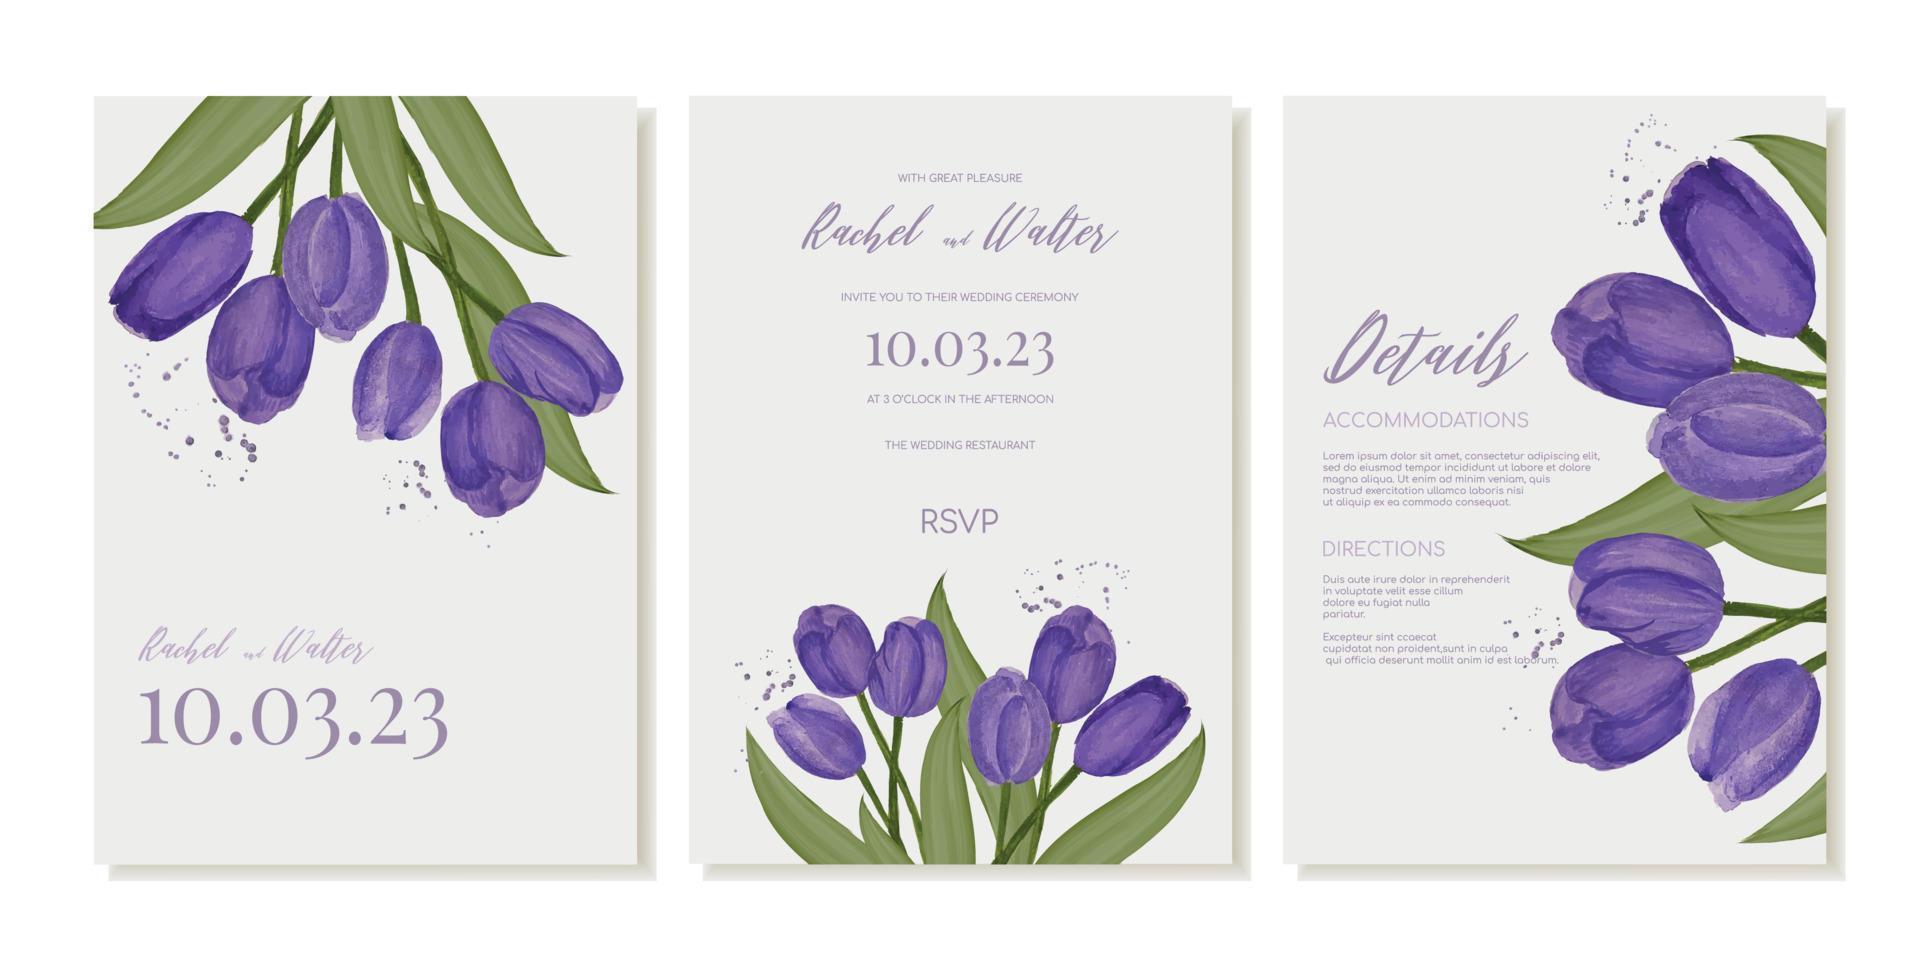 Boda invitación modelo con acuarela púrpura tulipanes vector